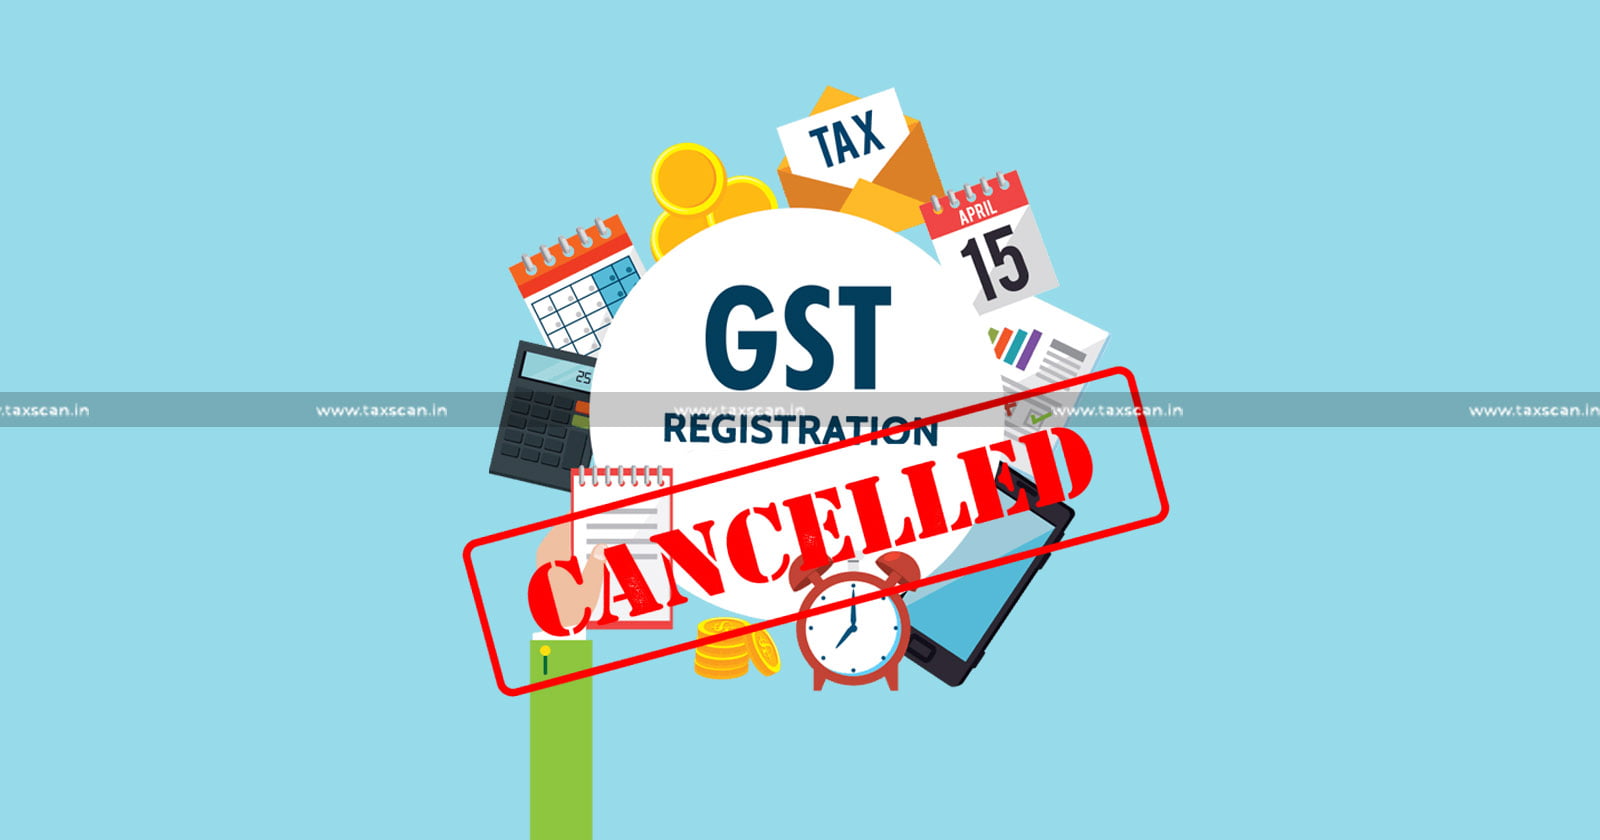 GST Registration - GST - GST Registration Cancellation - Documents - Karnataka High Court - SCN - Taxscan